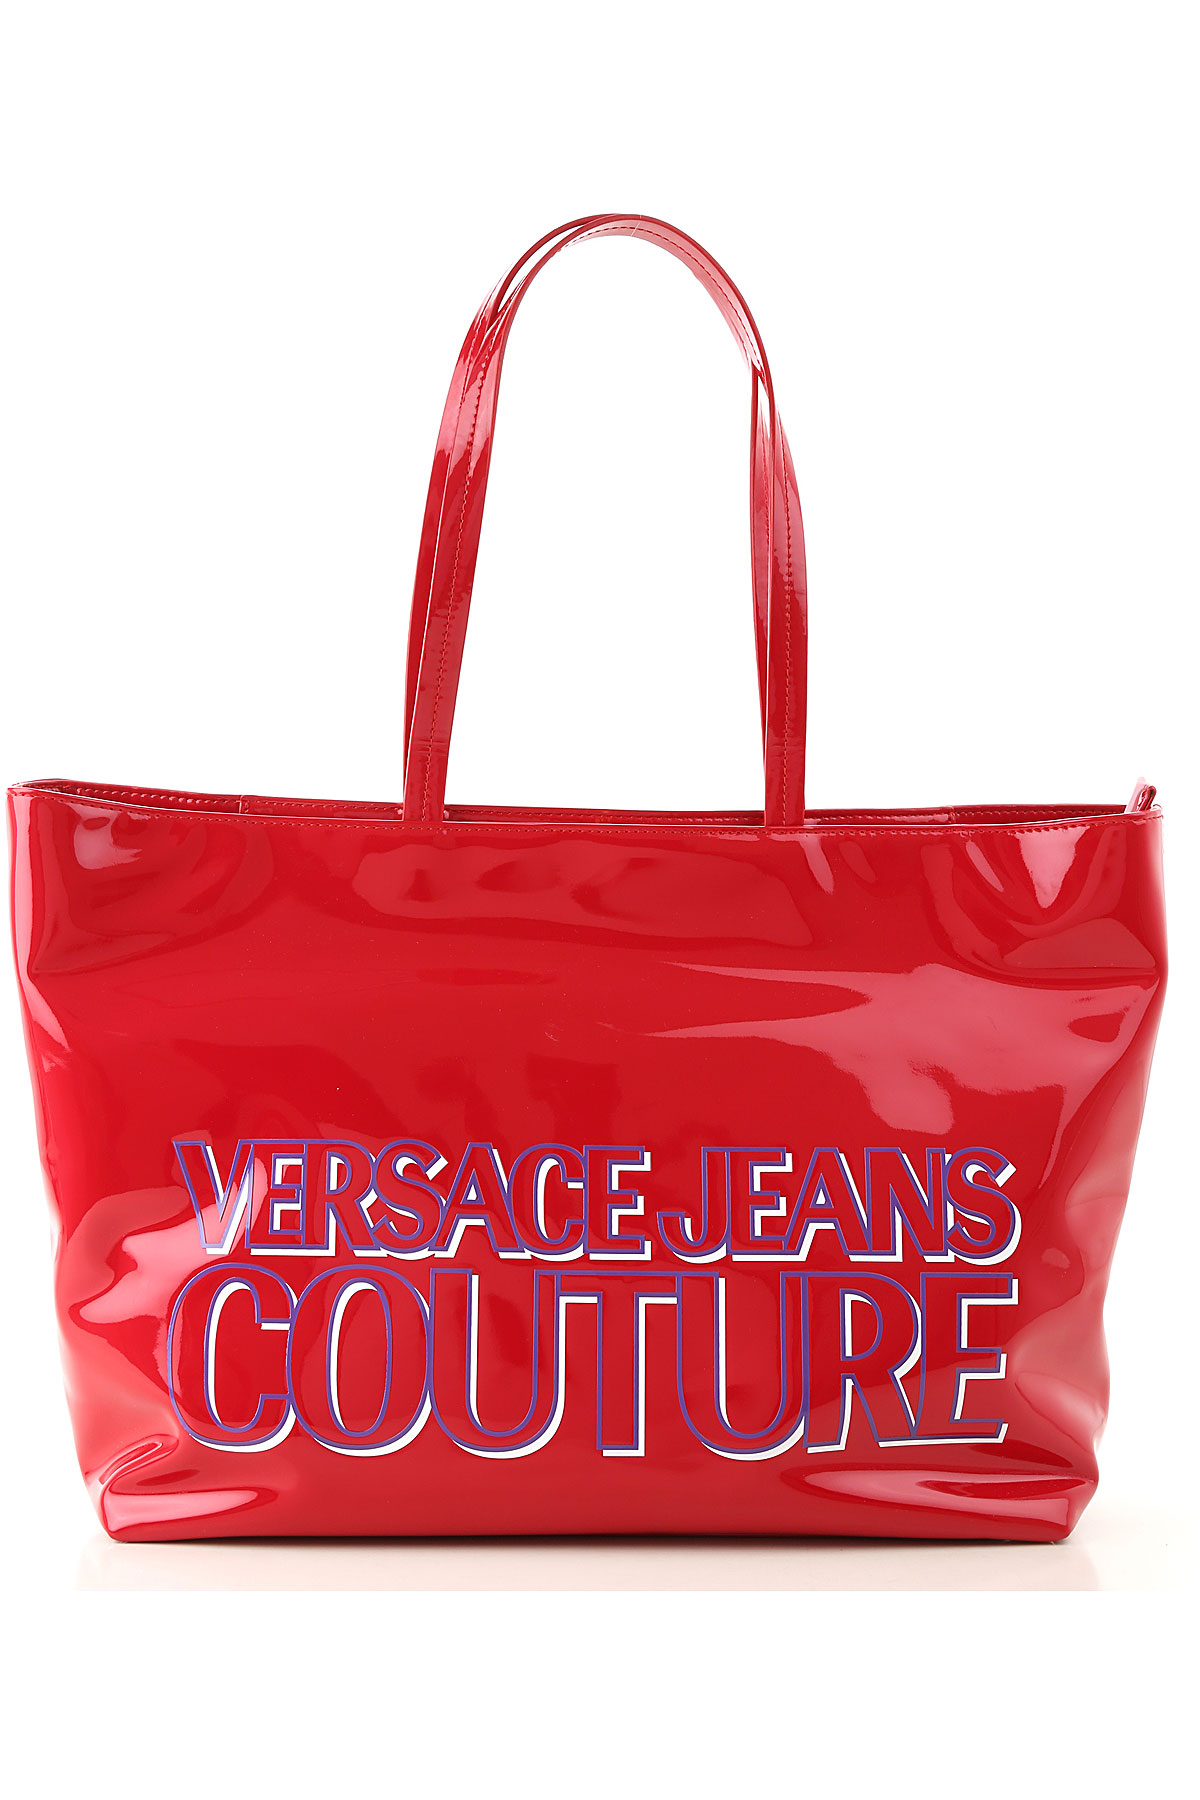 Versace Jeans Couture Tragetasche für Damen Günstig im Sale, Rot, Poyiester, 2017